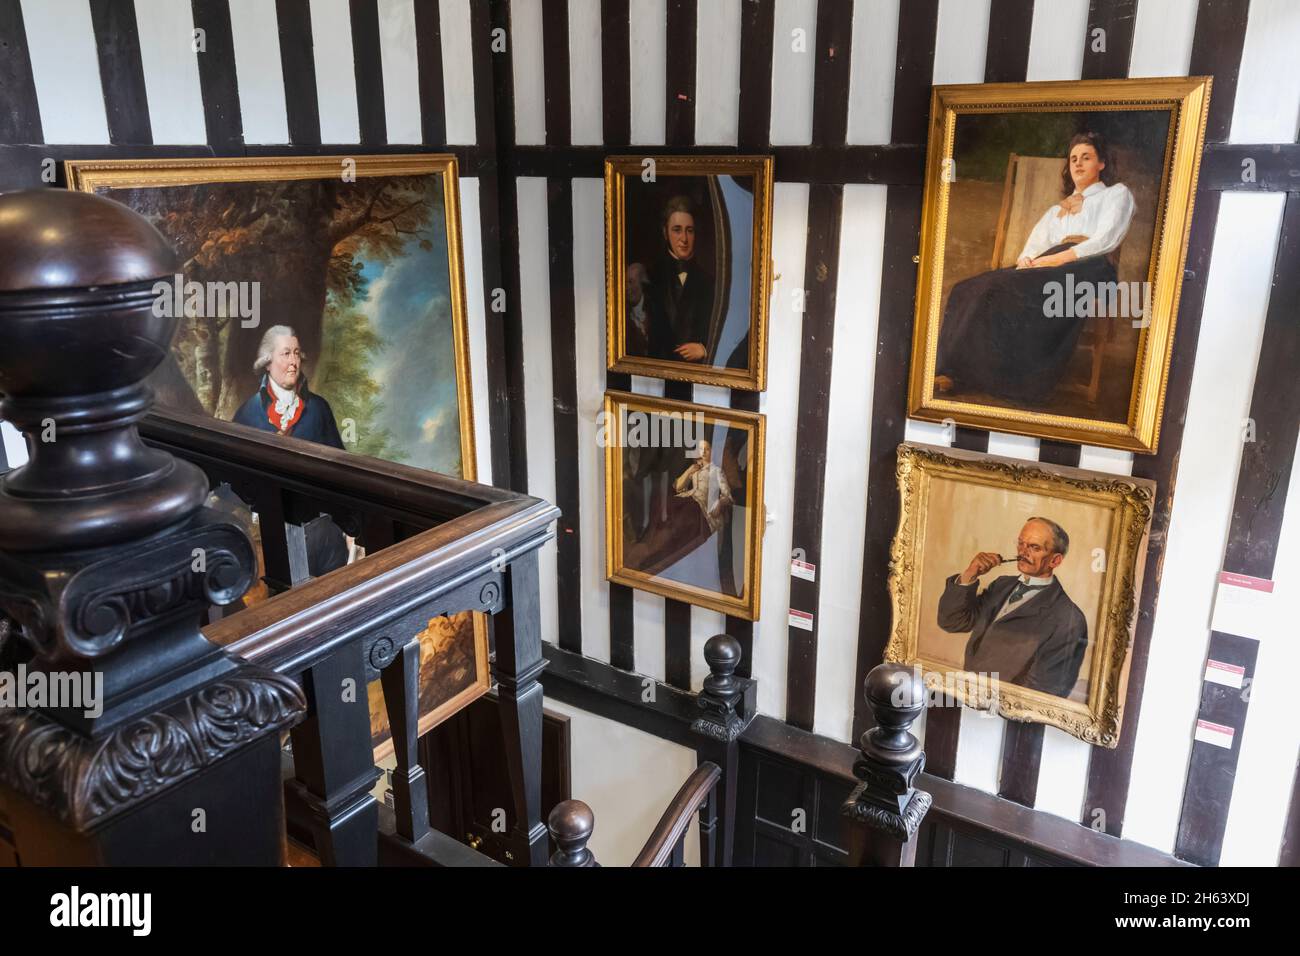 inglaterra, southampton, casa tudor y jardín museo, vista interior que muestra escalera de madera y obras de arte Foto de stock